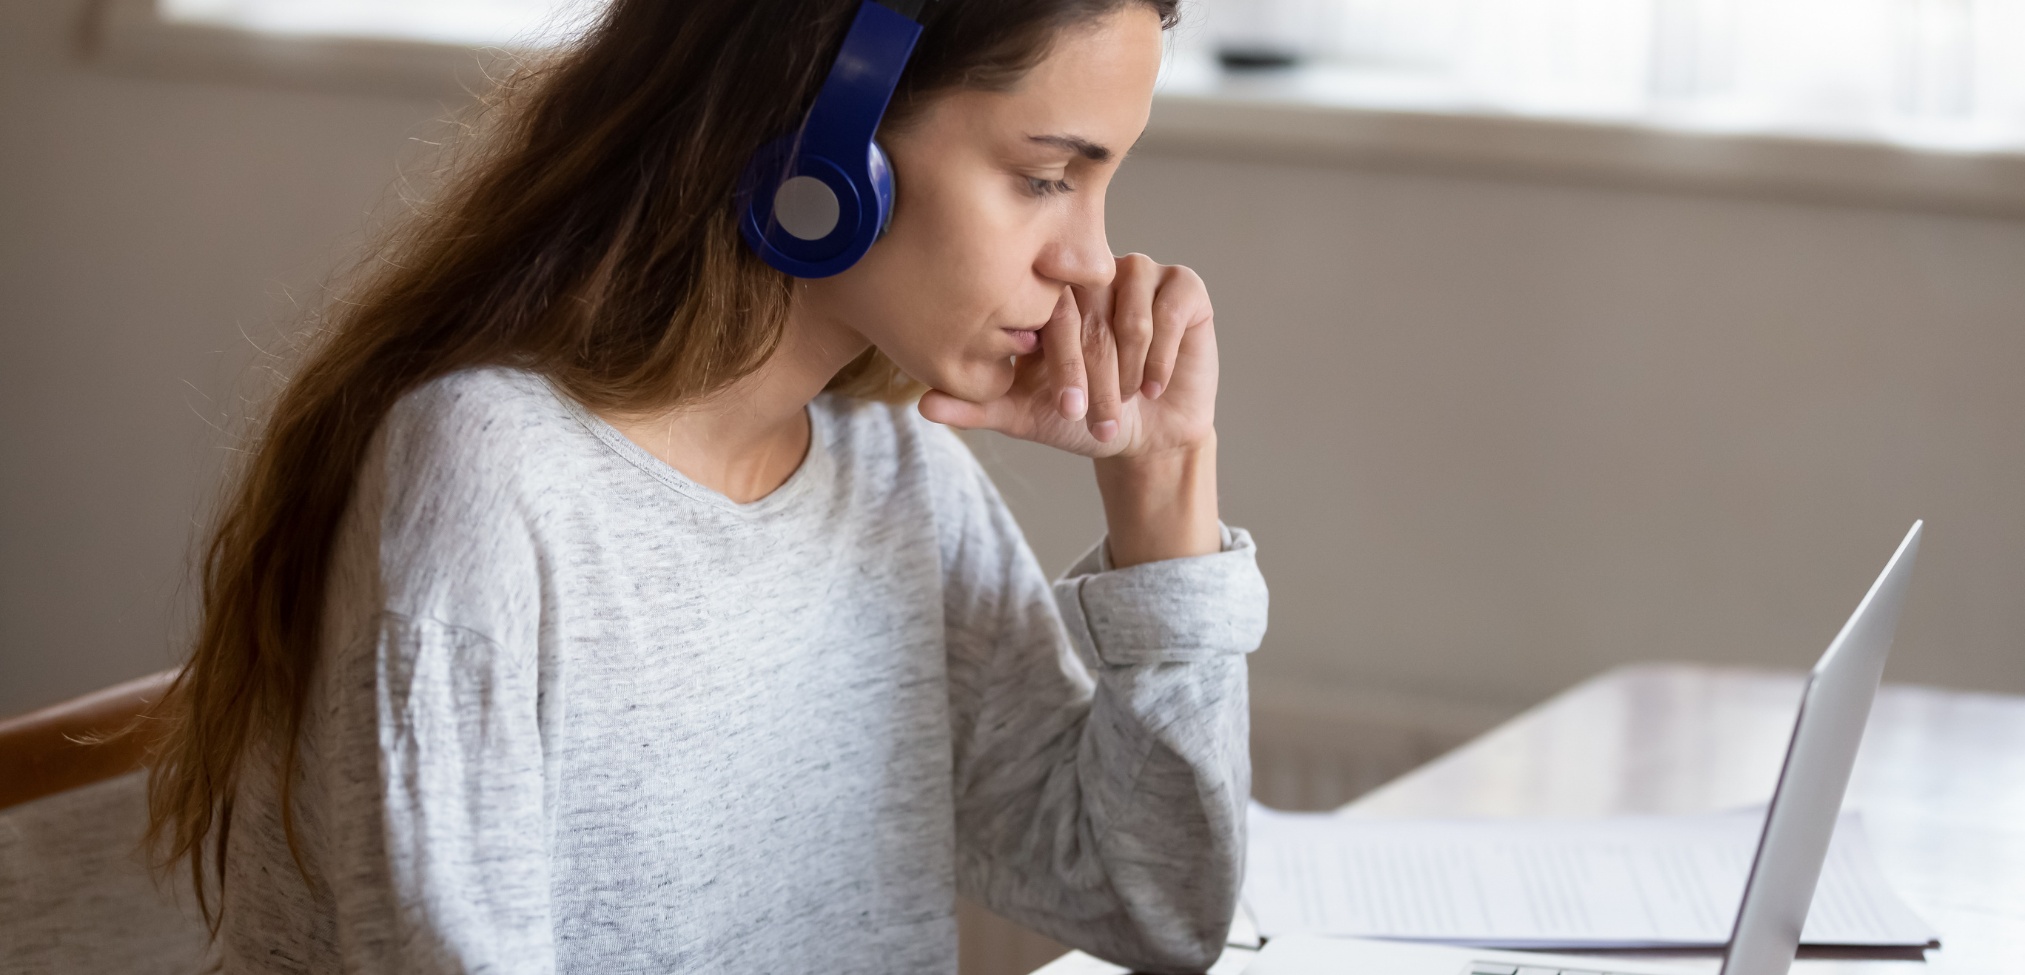 Imagen de portada de sección "Evaluaciones" en donde se visualiza una chica con auriculares mirando pensativa a la pantalla de una notebook